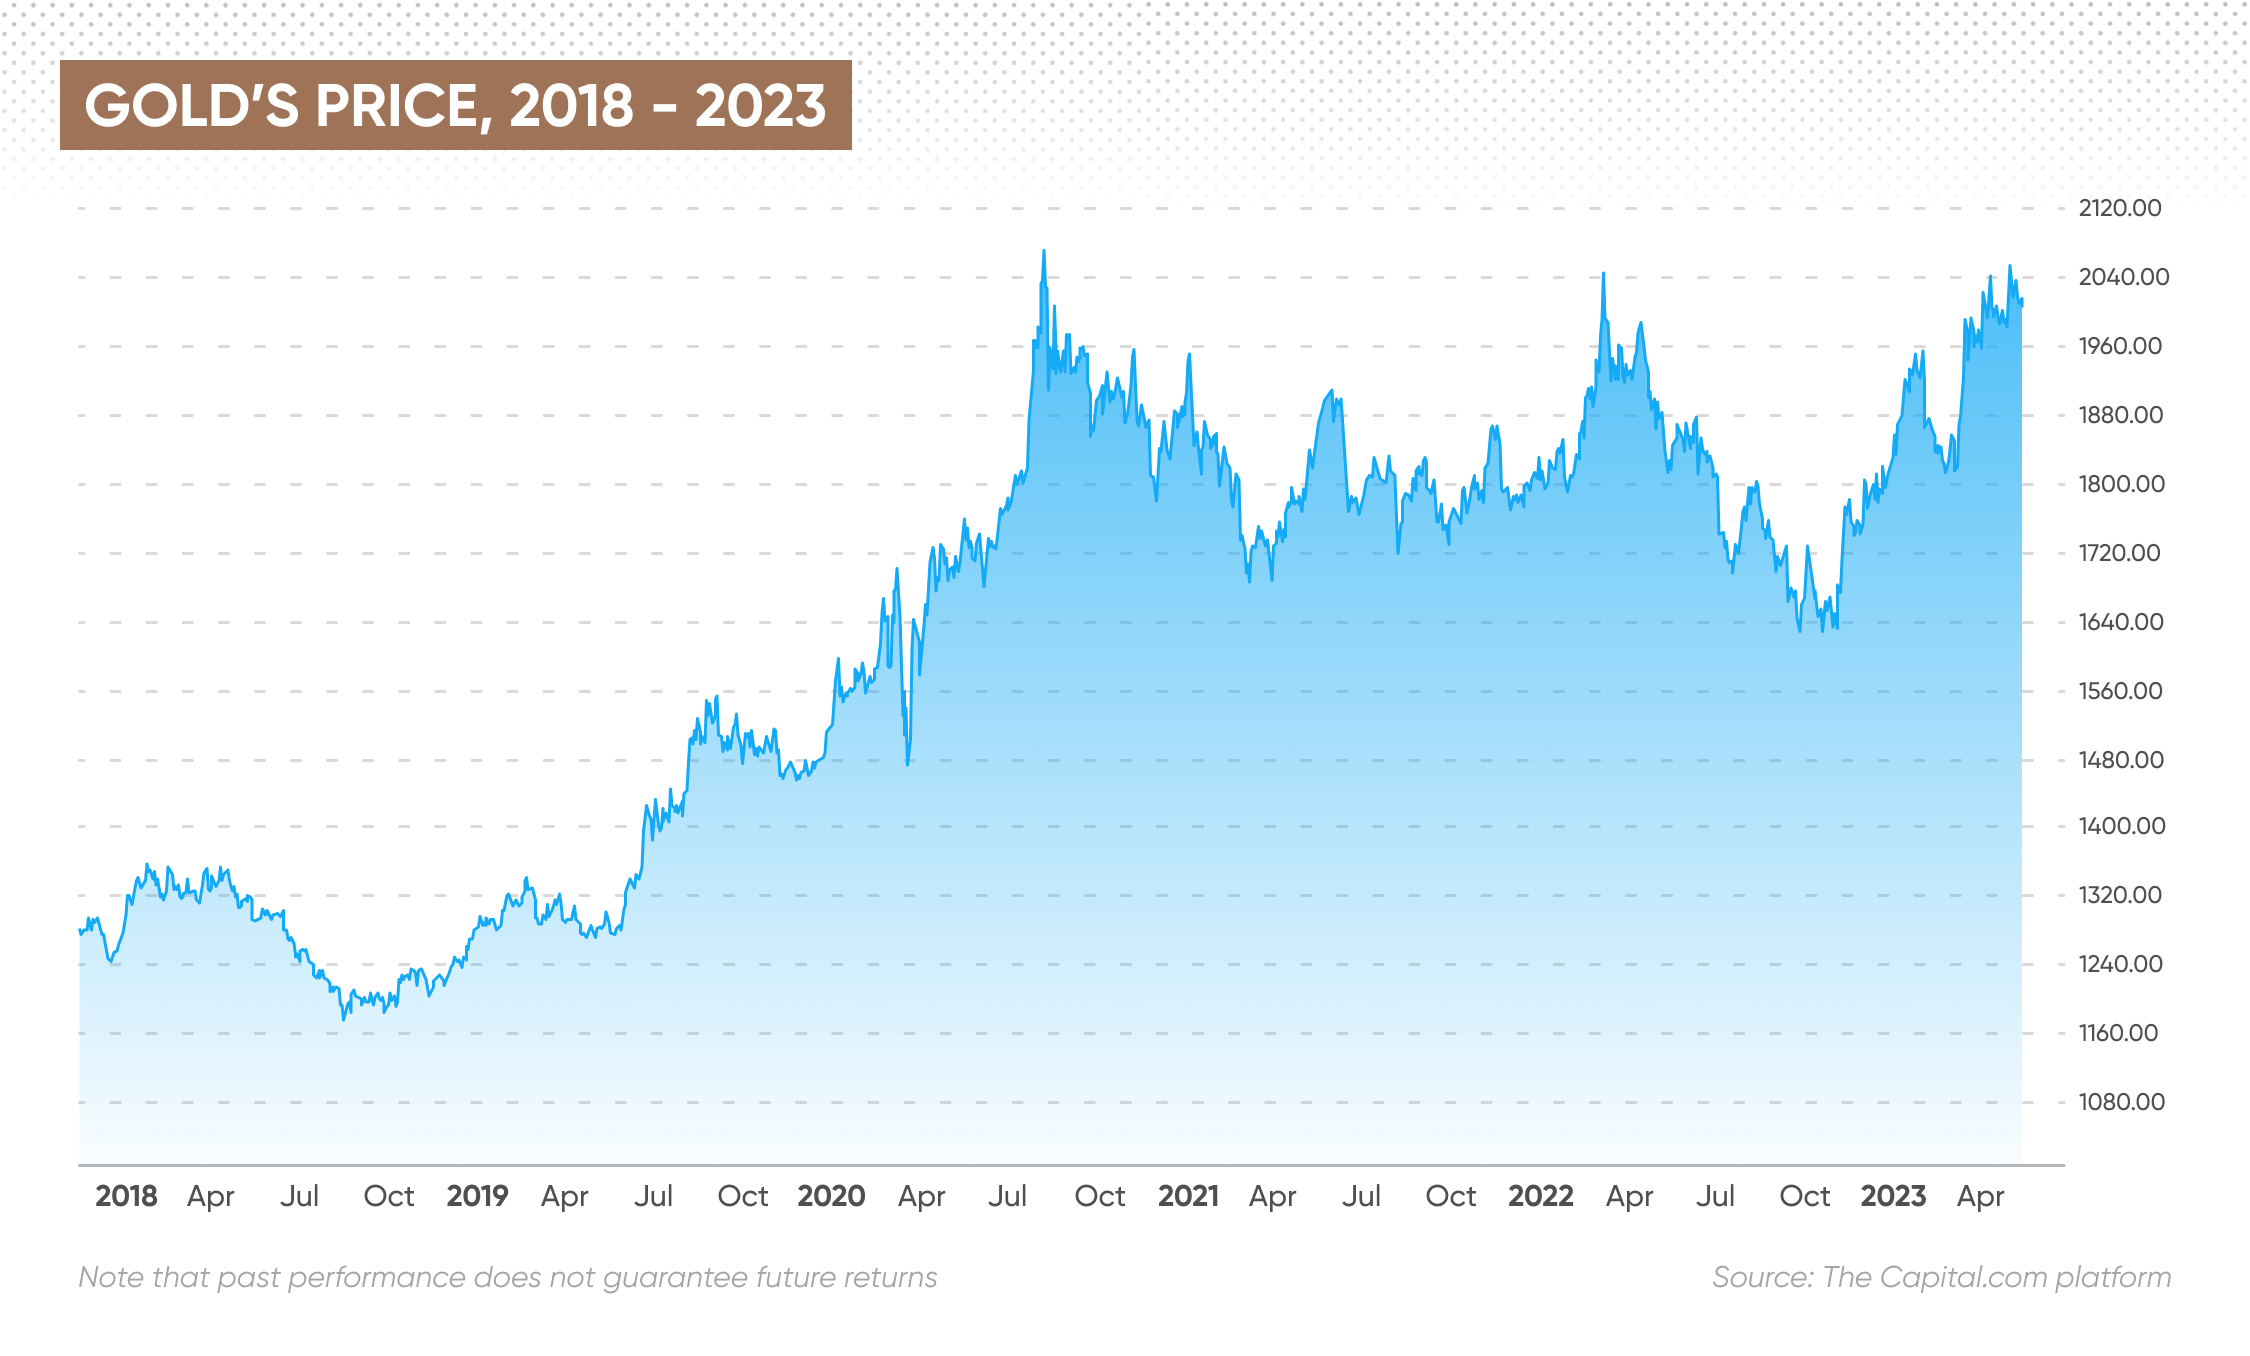 Gold’s price, 2018 - 2023